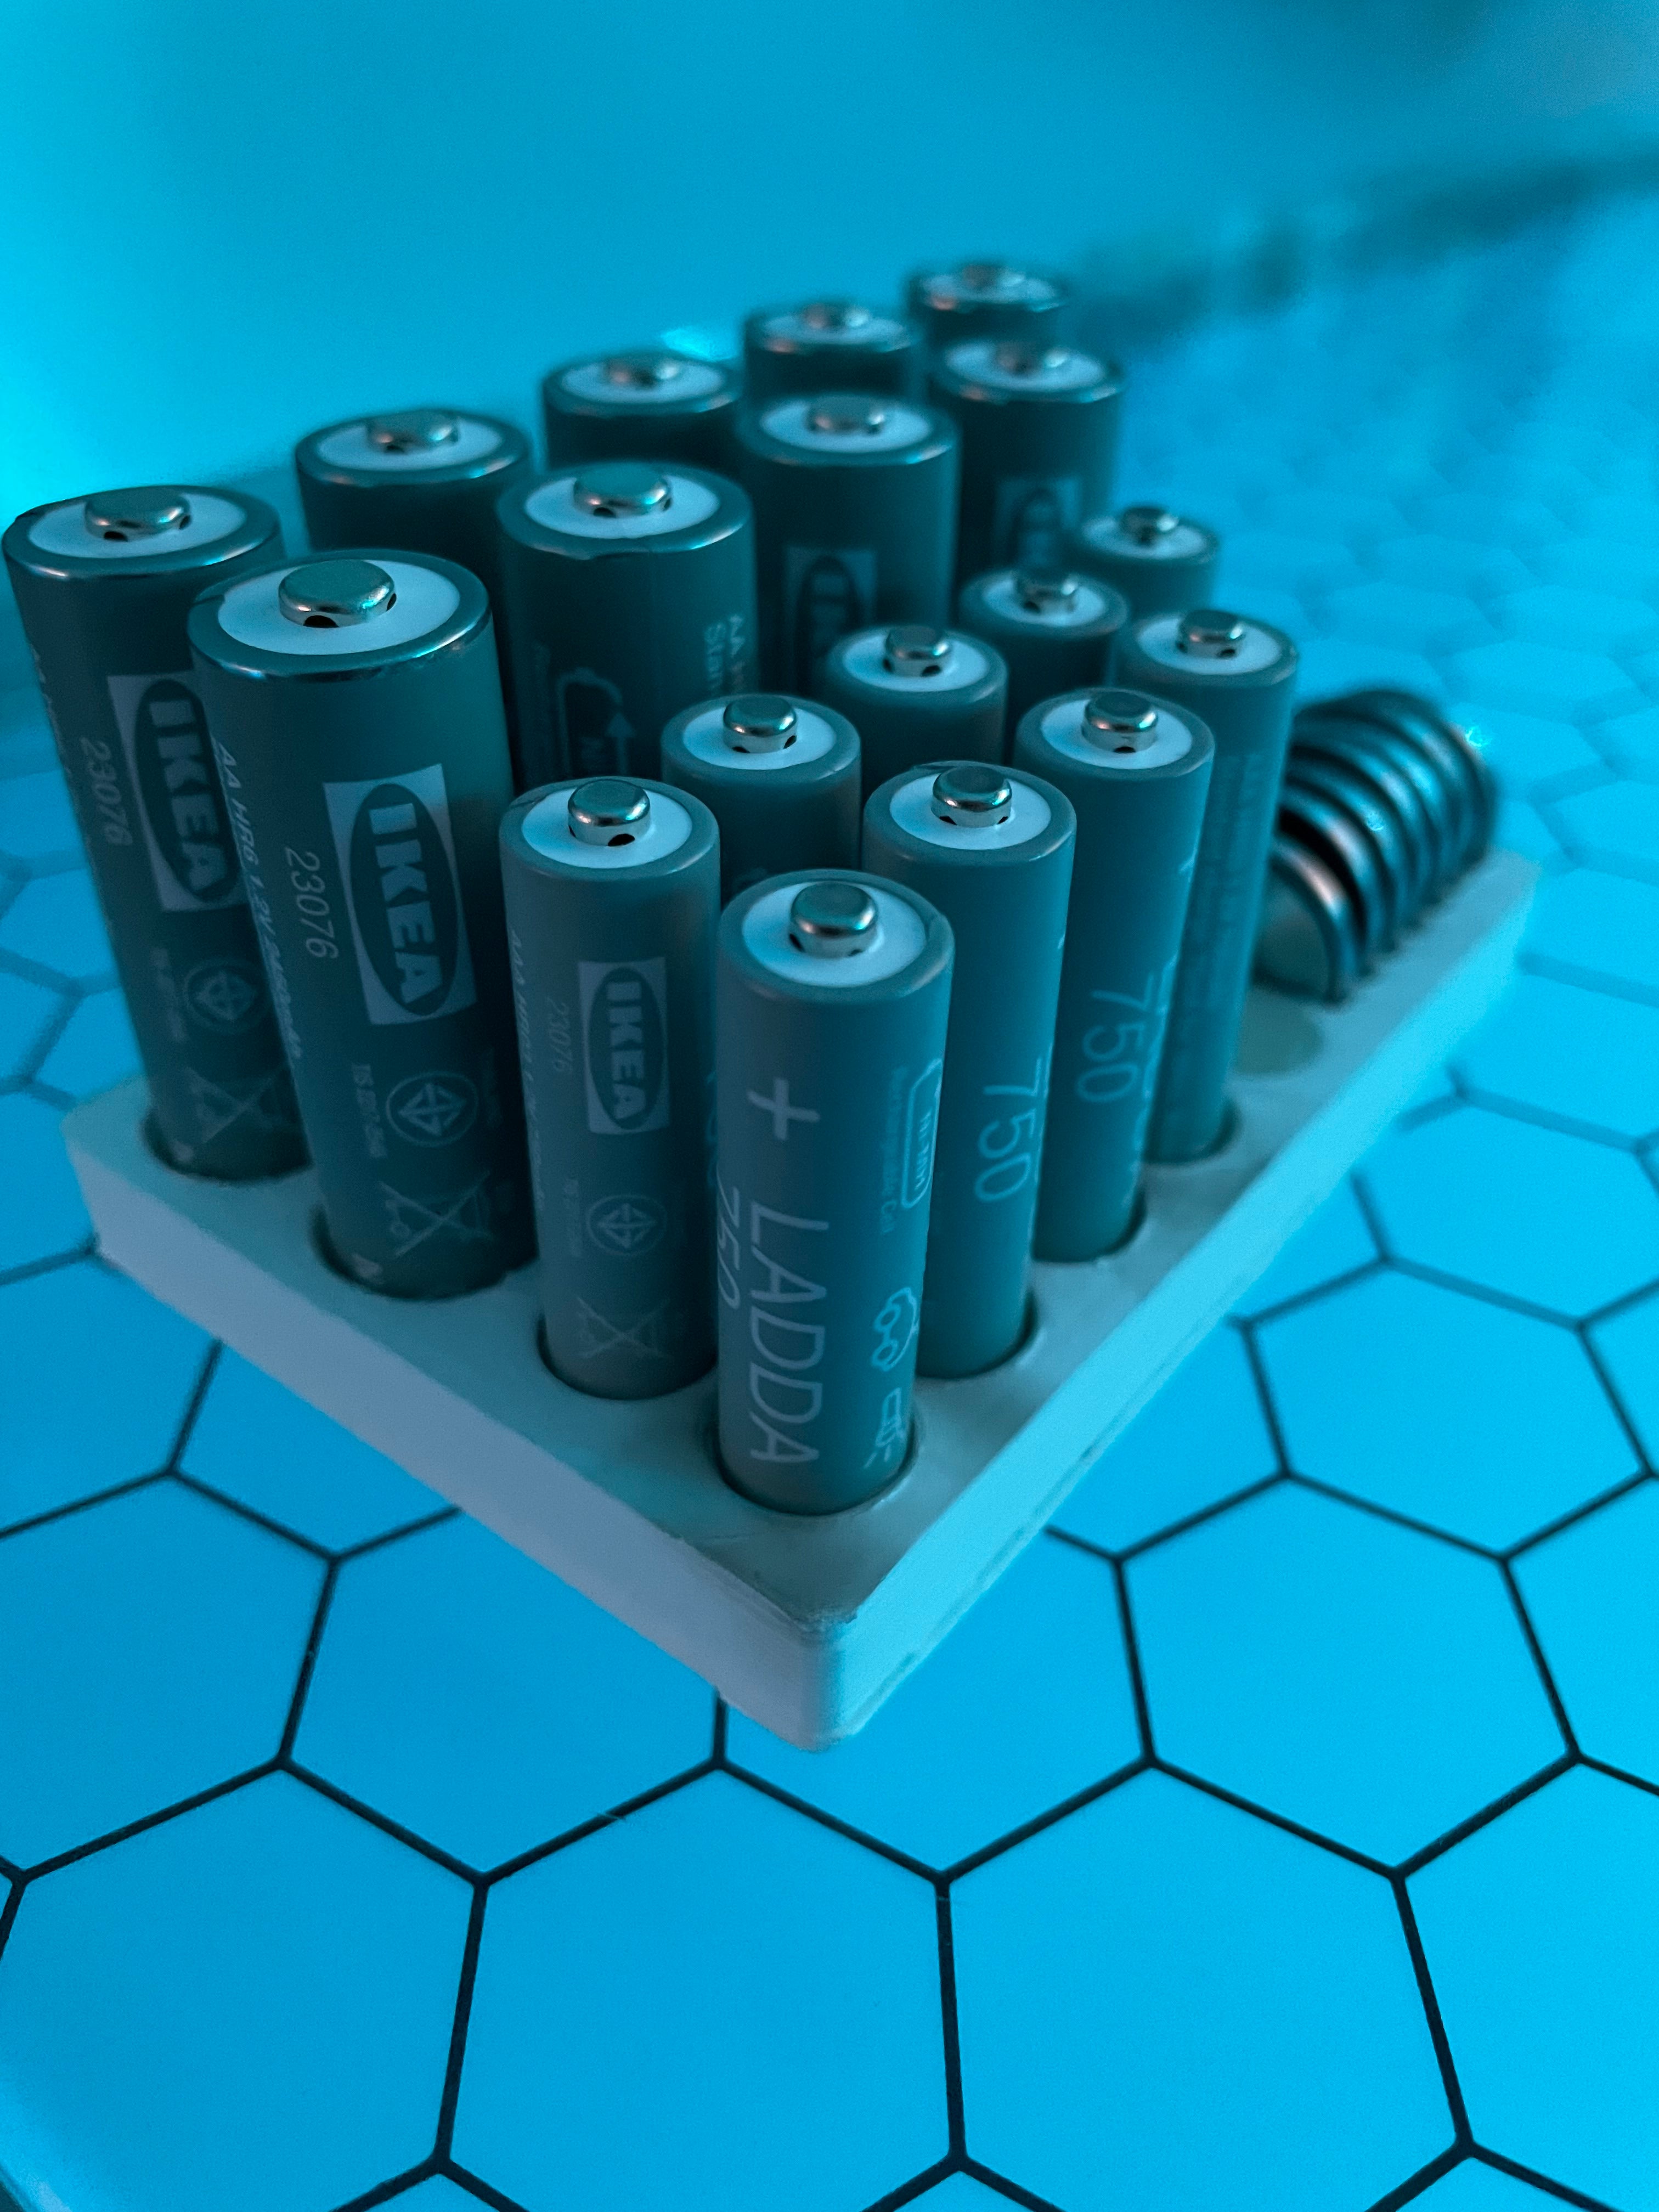 Batterijhouder voor AA, AAA en CR2032 batterijen (past op IKEA Ladda)